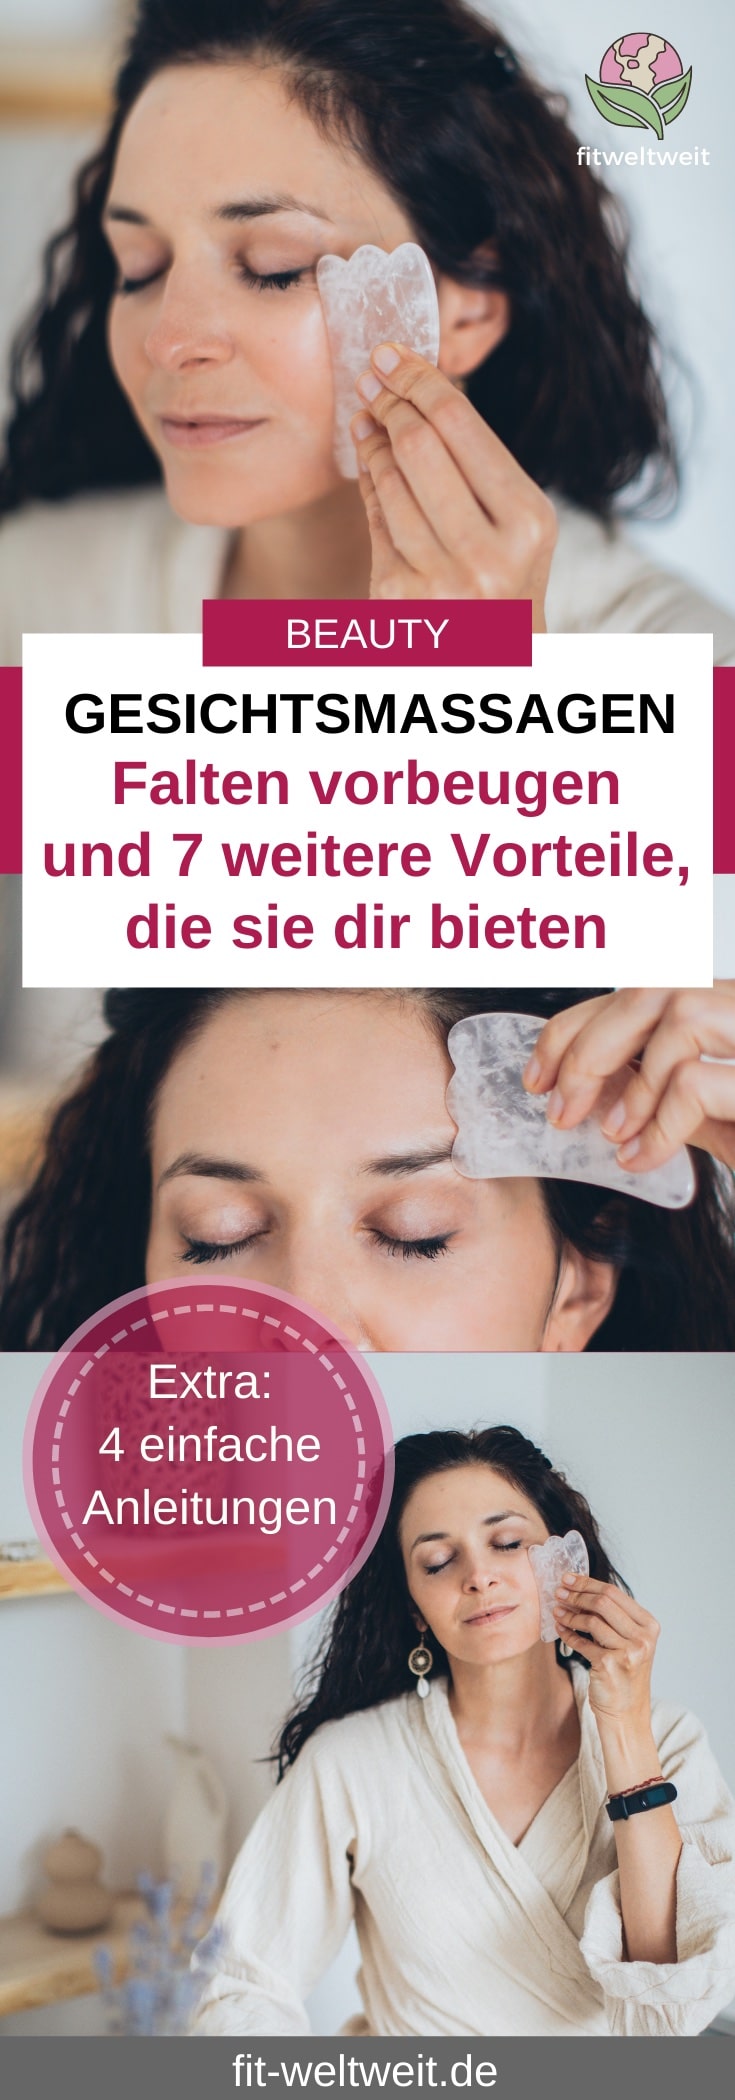 Gesichtsmassage GUA Stein gegen Falten Anwendung Tipps - fit-weltweit.de